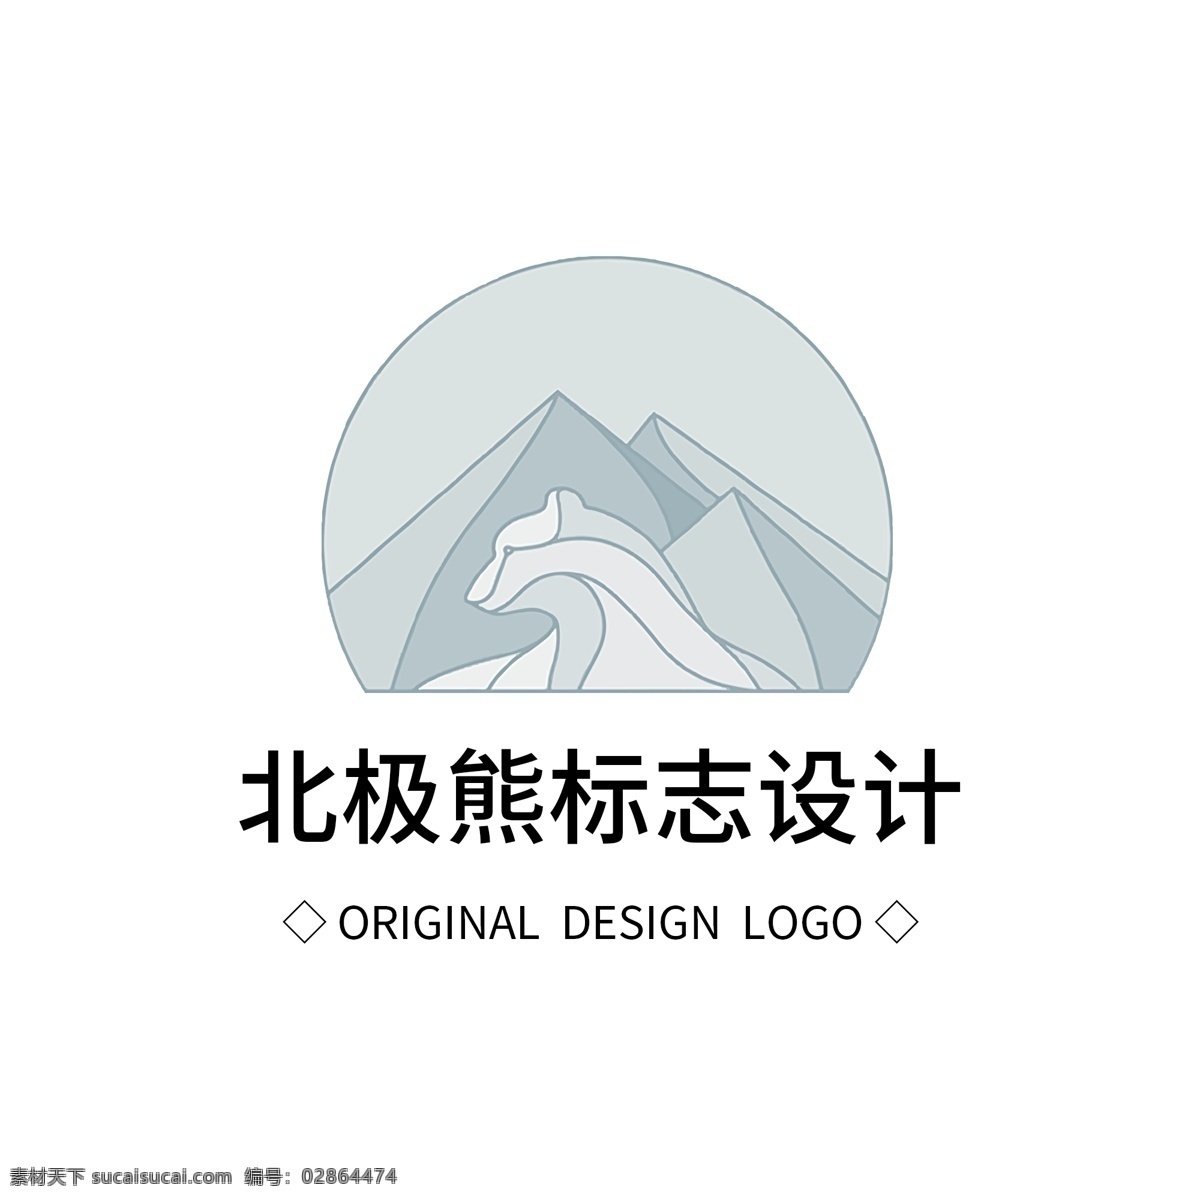 原创 北极熊 标志设计 logo 创意 简约 标识 标志 可商用 广告 传媒 字体设计 元素 企业logo 公司logo 徽标 北极 冰山 企业 商务 熊